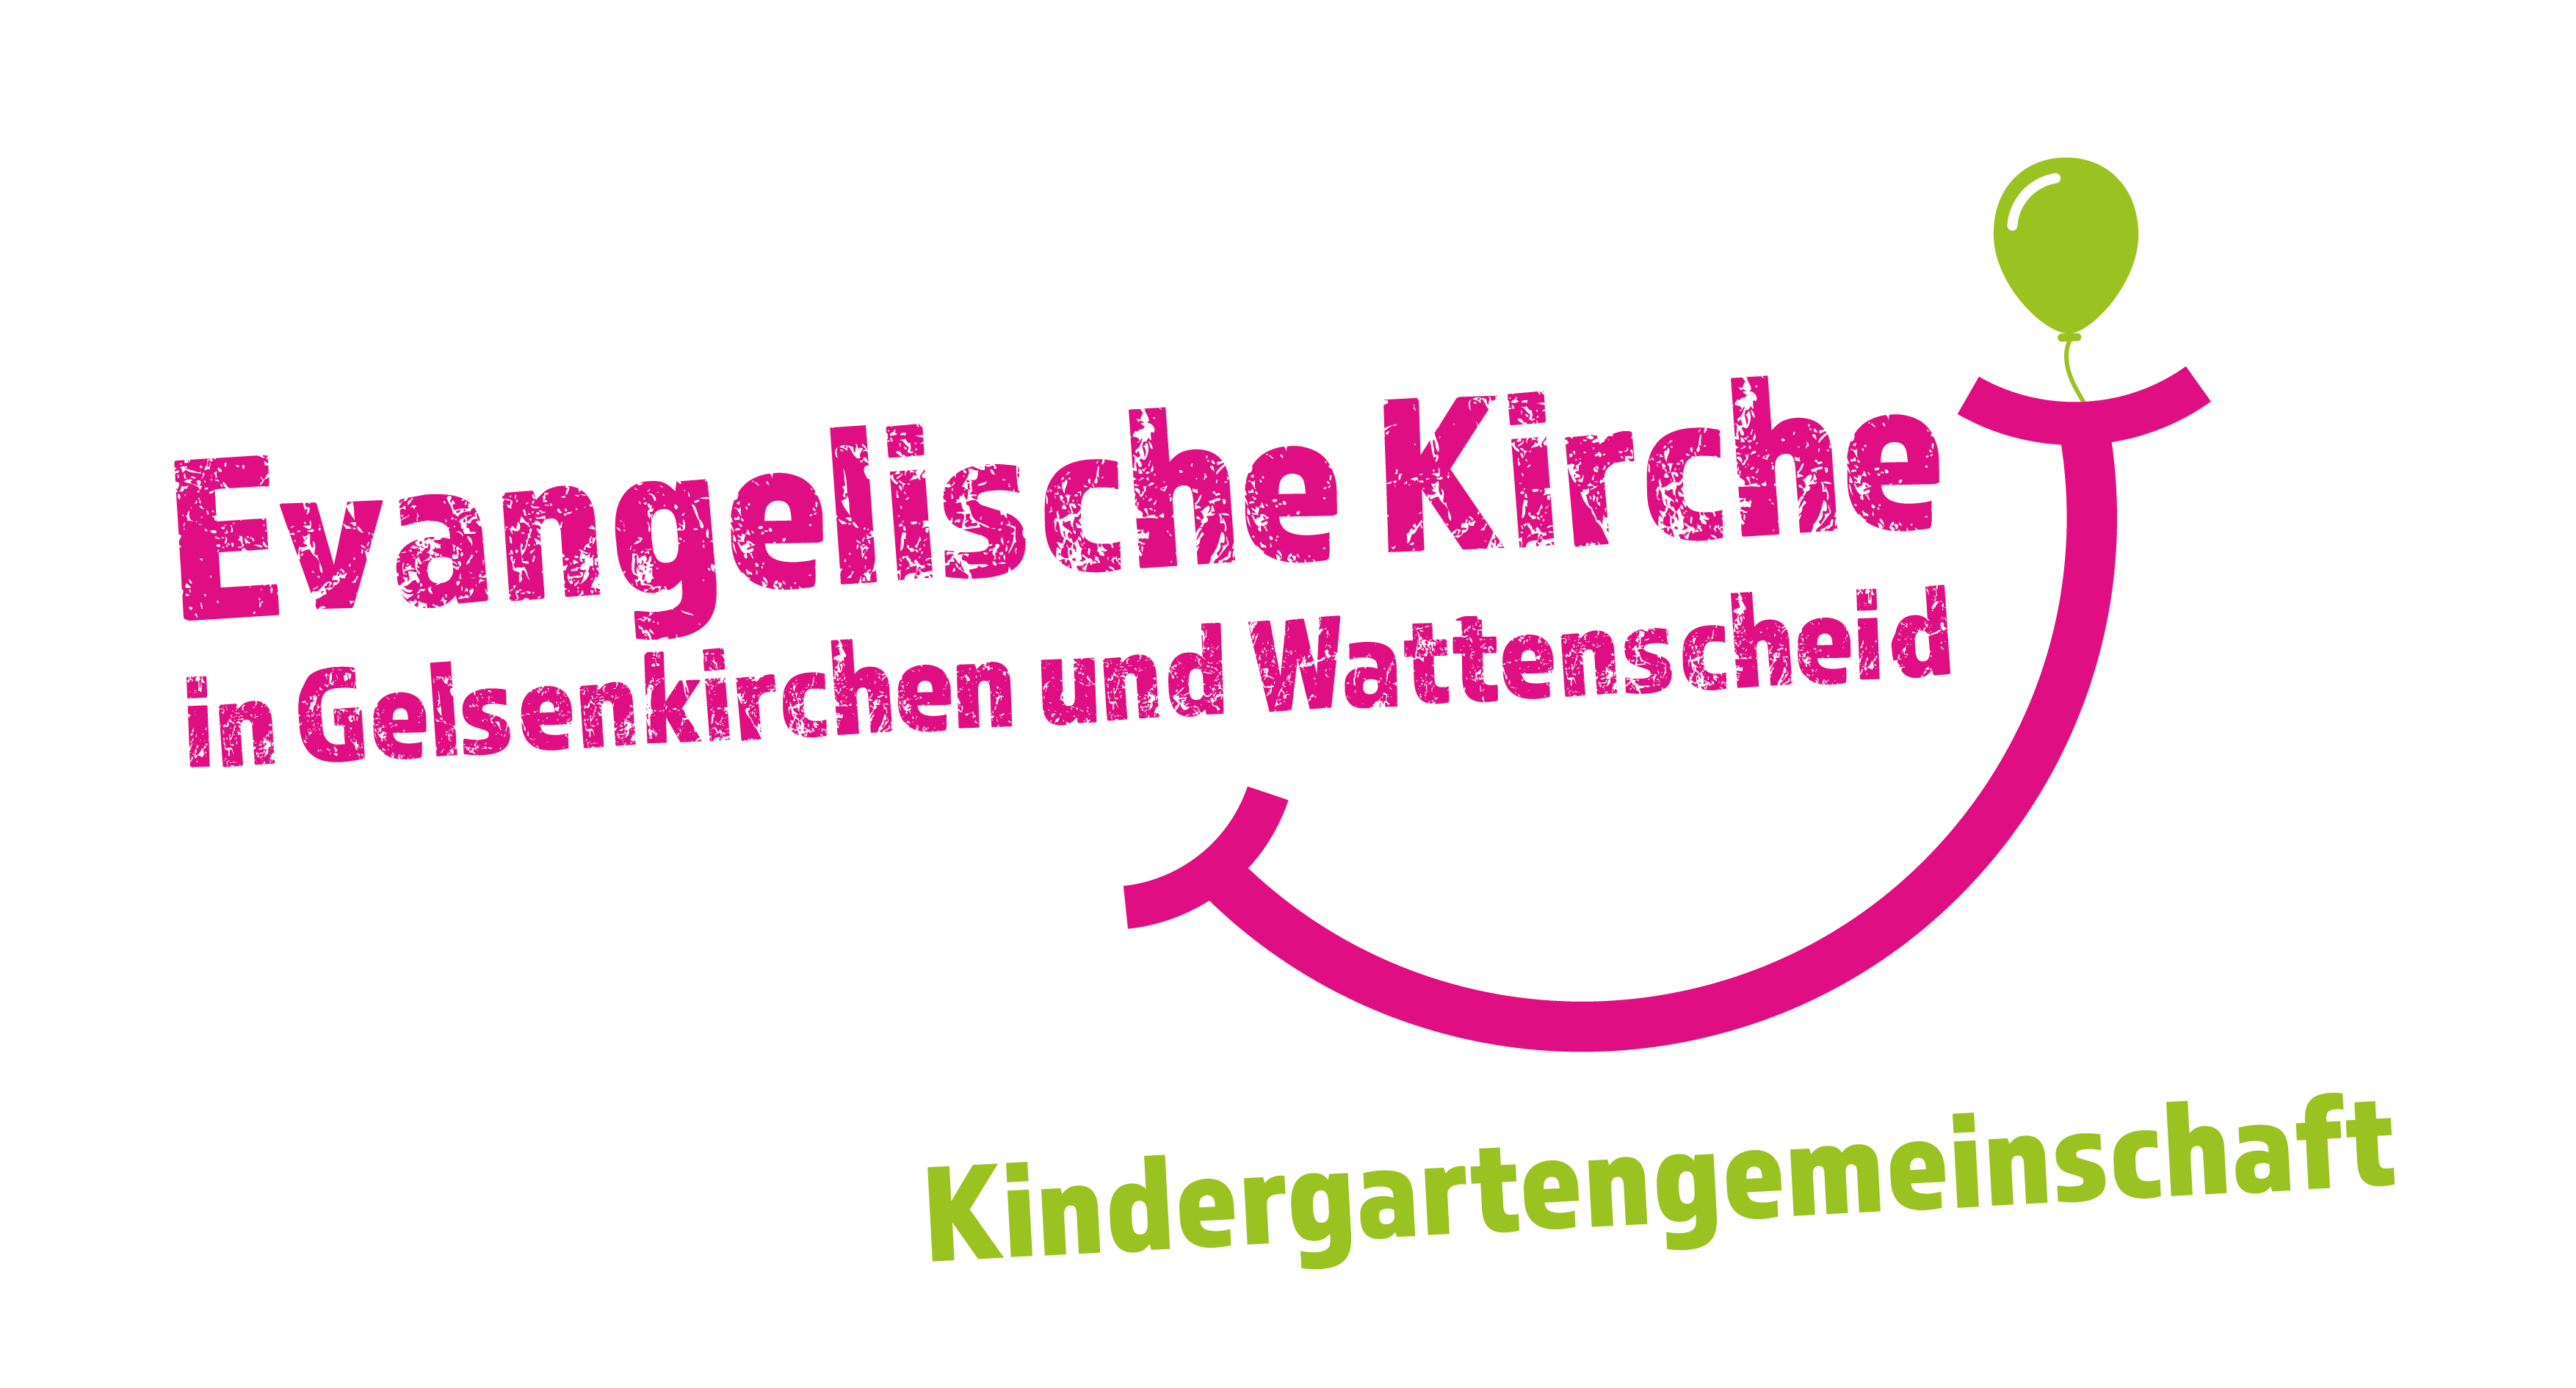 Kindergartengemeinschaft des Evangelischen Kirchenkreises Gelsenkirchen und Wattenscheid